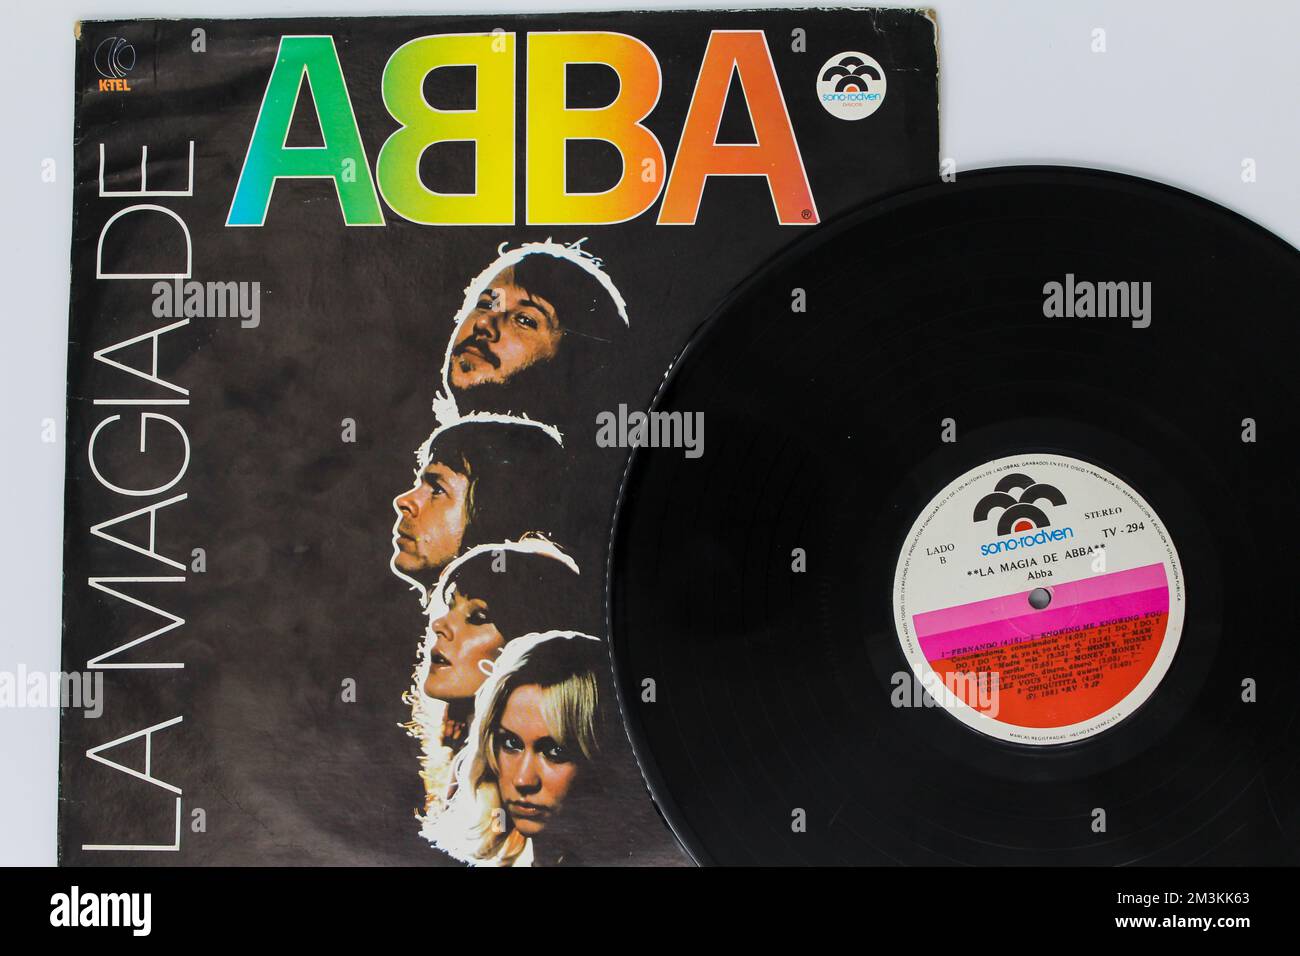 La magie de l'ABBA album de musique sur vinyle disque LP. Groupe pop suédois. Couverture de l'album Banque D'Images